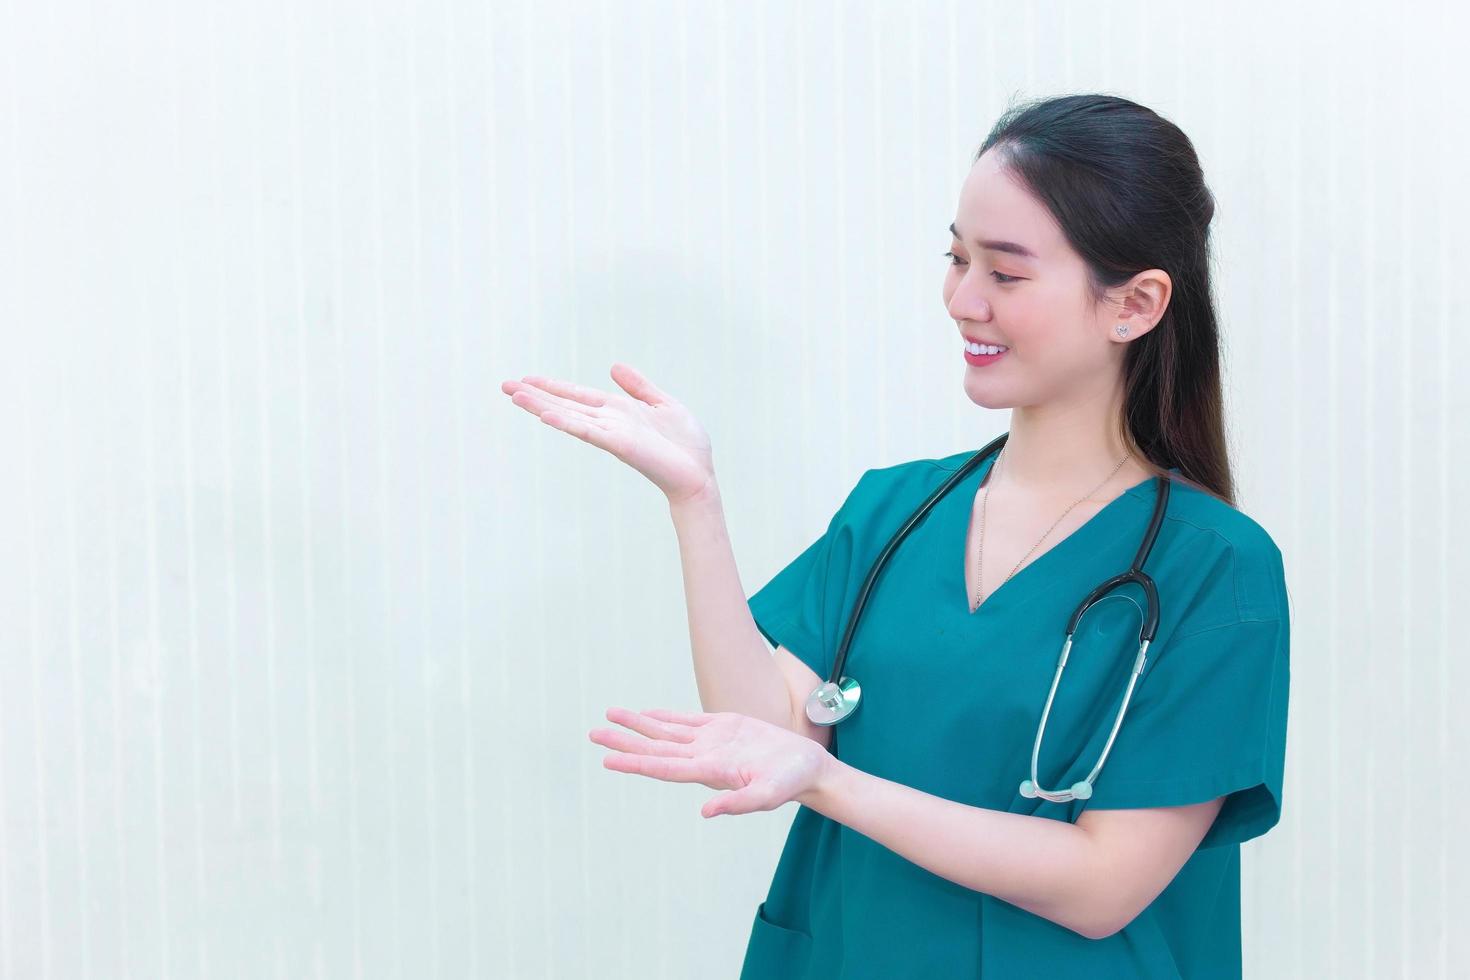 una doctora profesional asiática con un uniforme verde se pone de pie y sonríe mientras señala la parte superior sobre un fondo blanco. foto